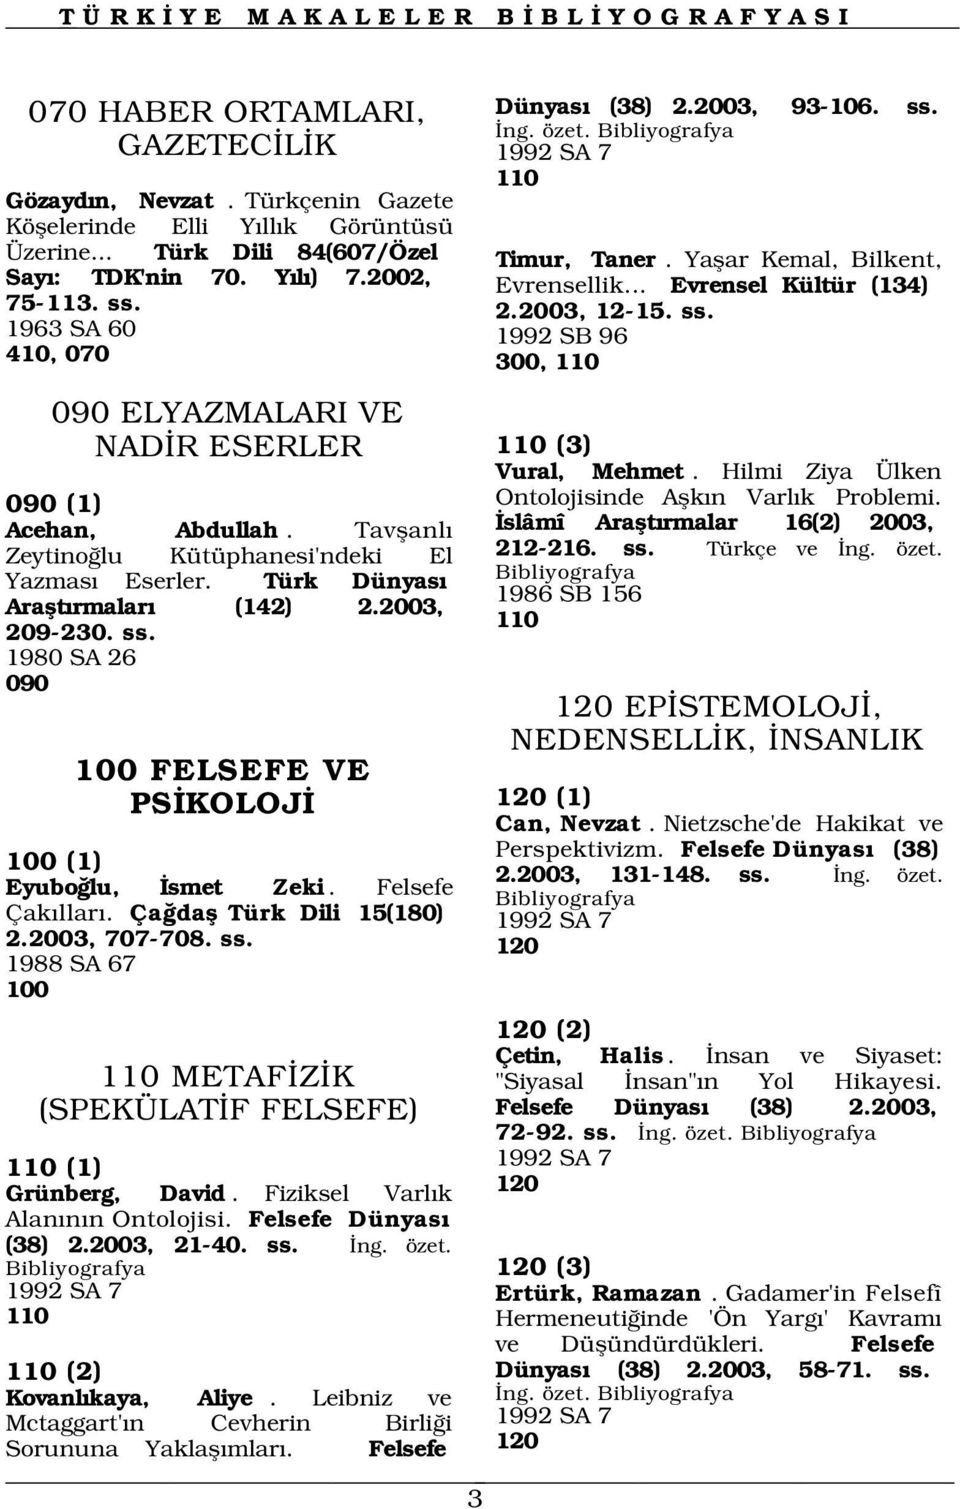 Hilmi Ziya Ülken 090 (1) Acehan, Abdullah. Tavflanl Zeytino lu Kütüphanesi'ndeki El Yazmas Eserler. Türk Dünyas Araflt rmalar (142) 2.2003, 209-230. ss.